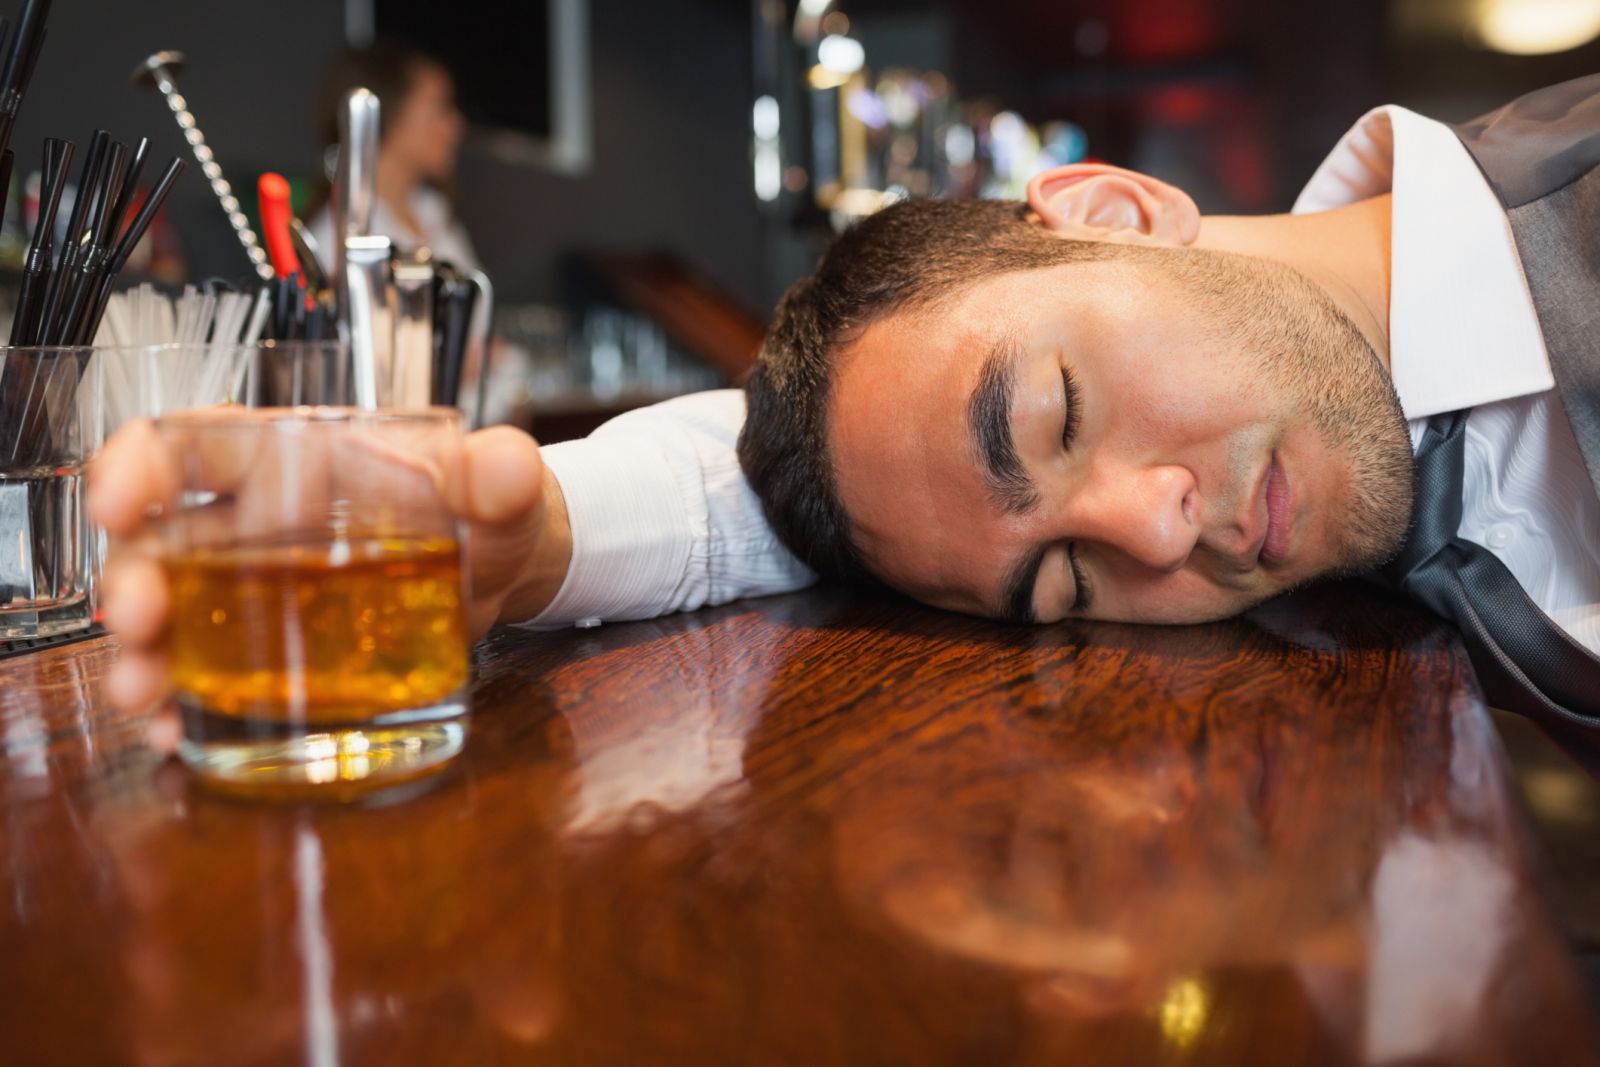 Aspirin buổi chiều: Tại sao uống rượu lại say?